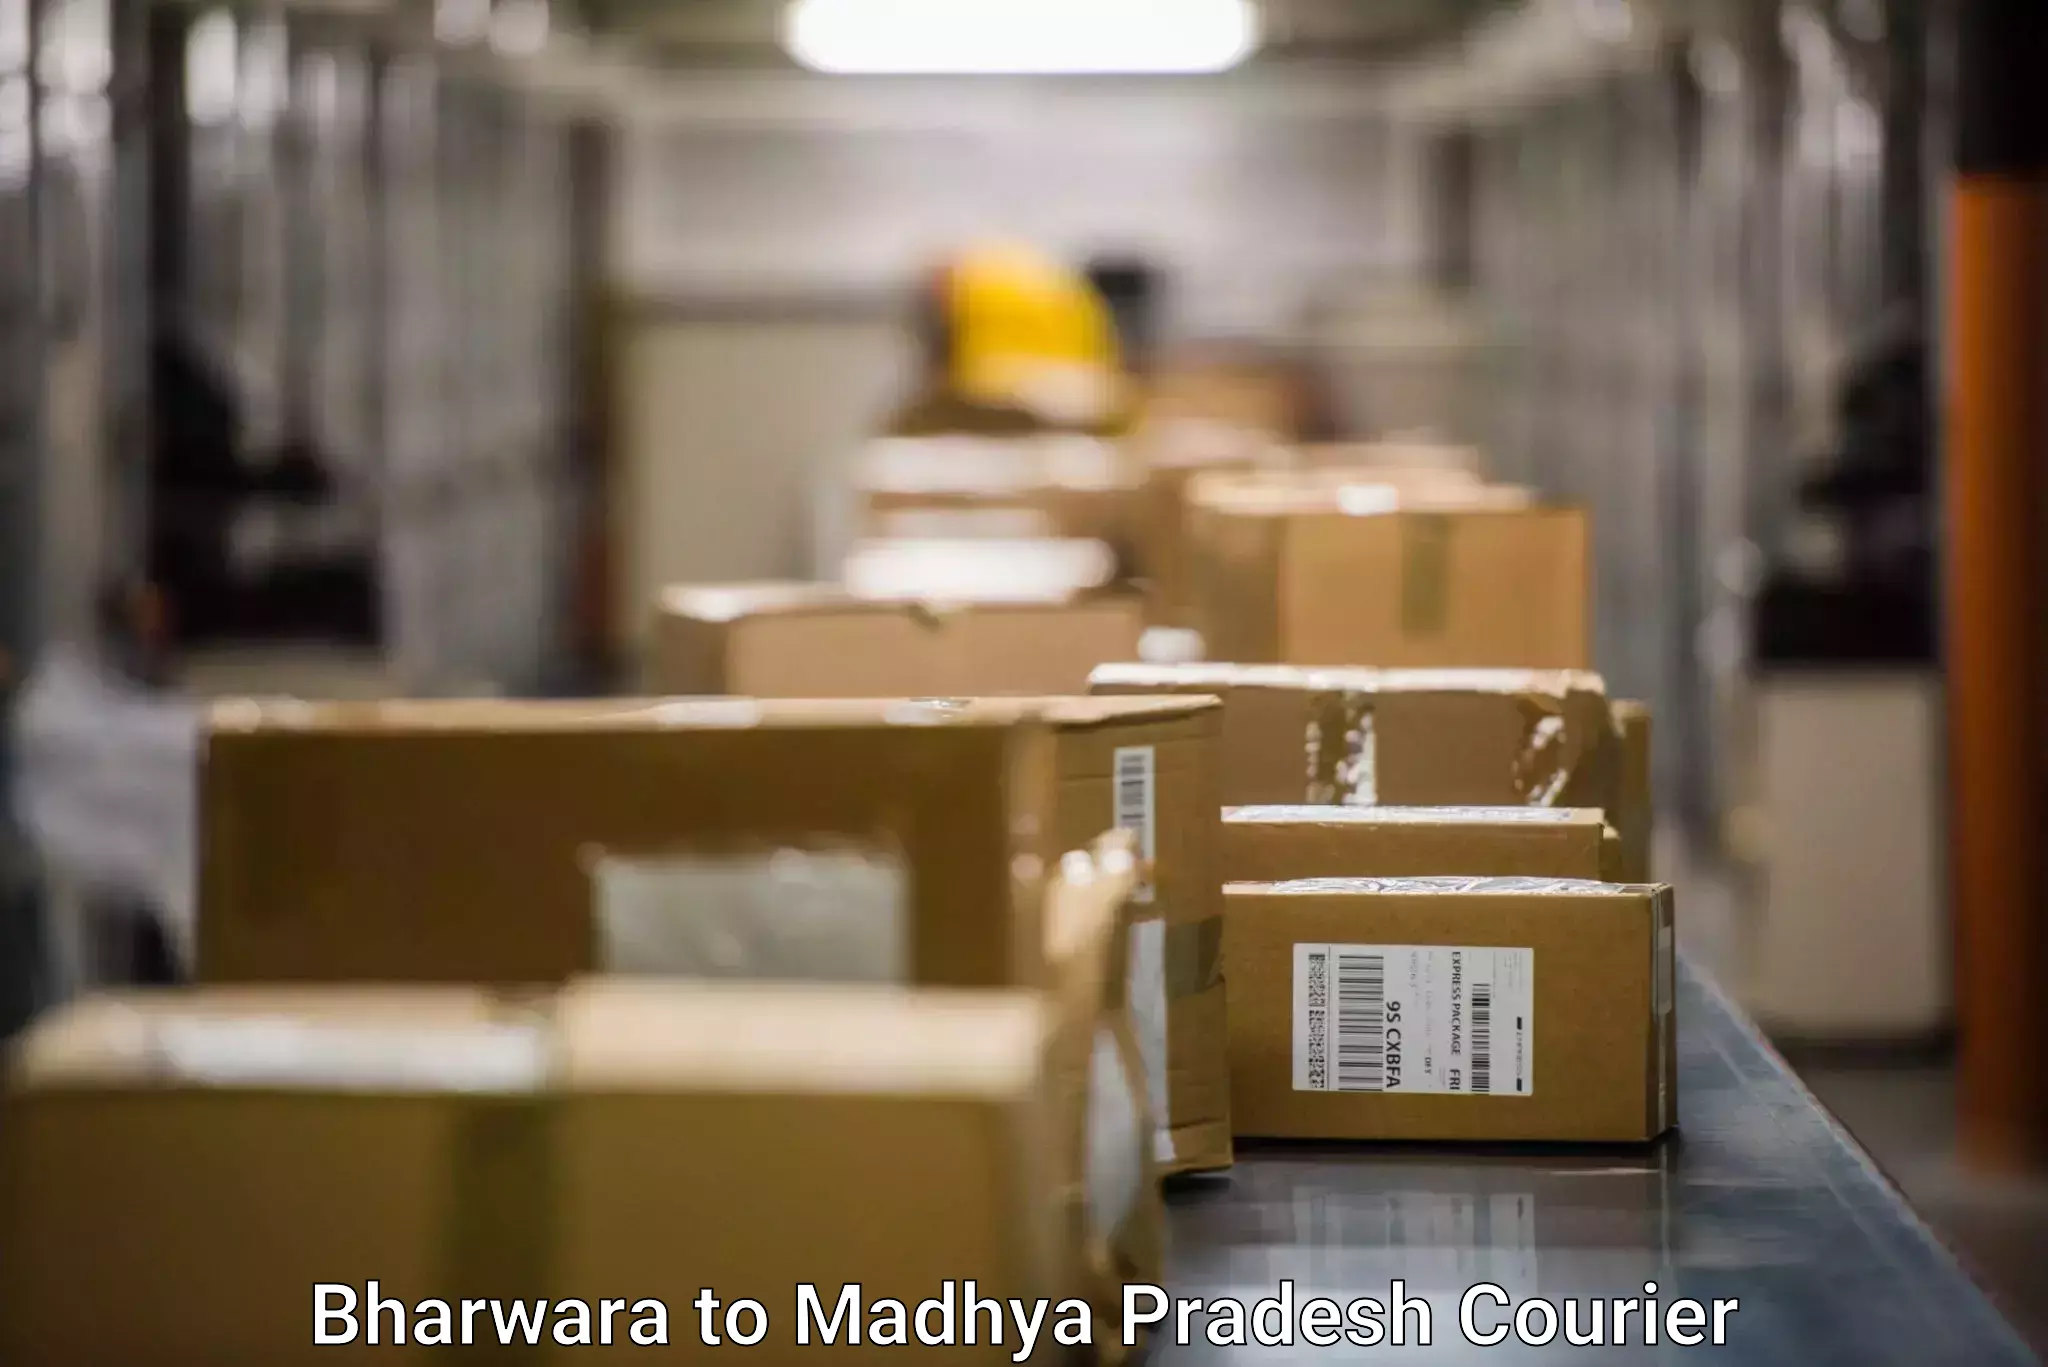 Efficient parcel service Bharwara to Rehli